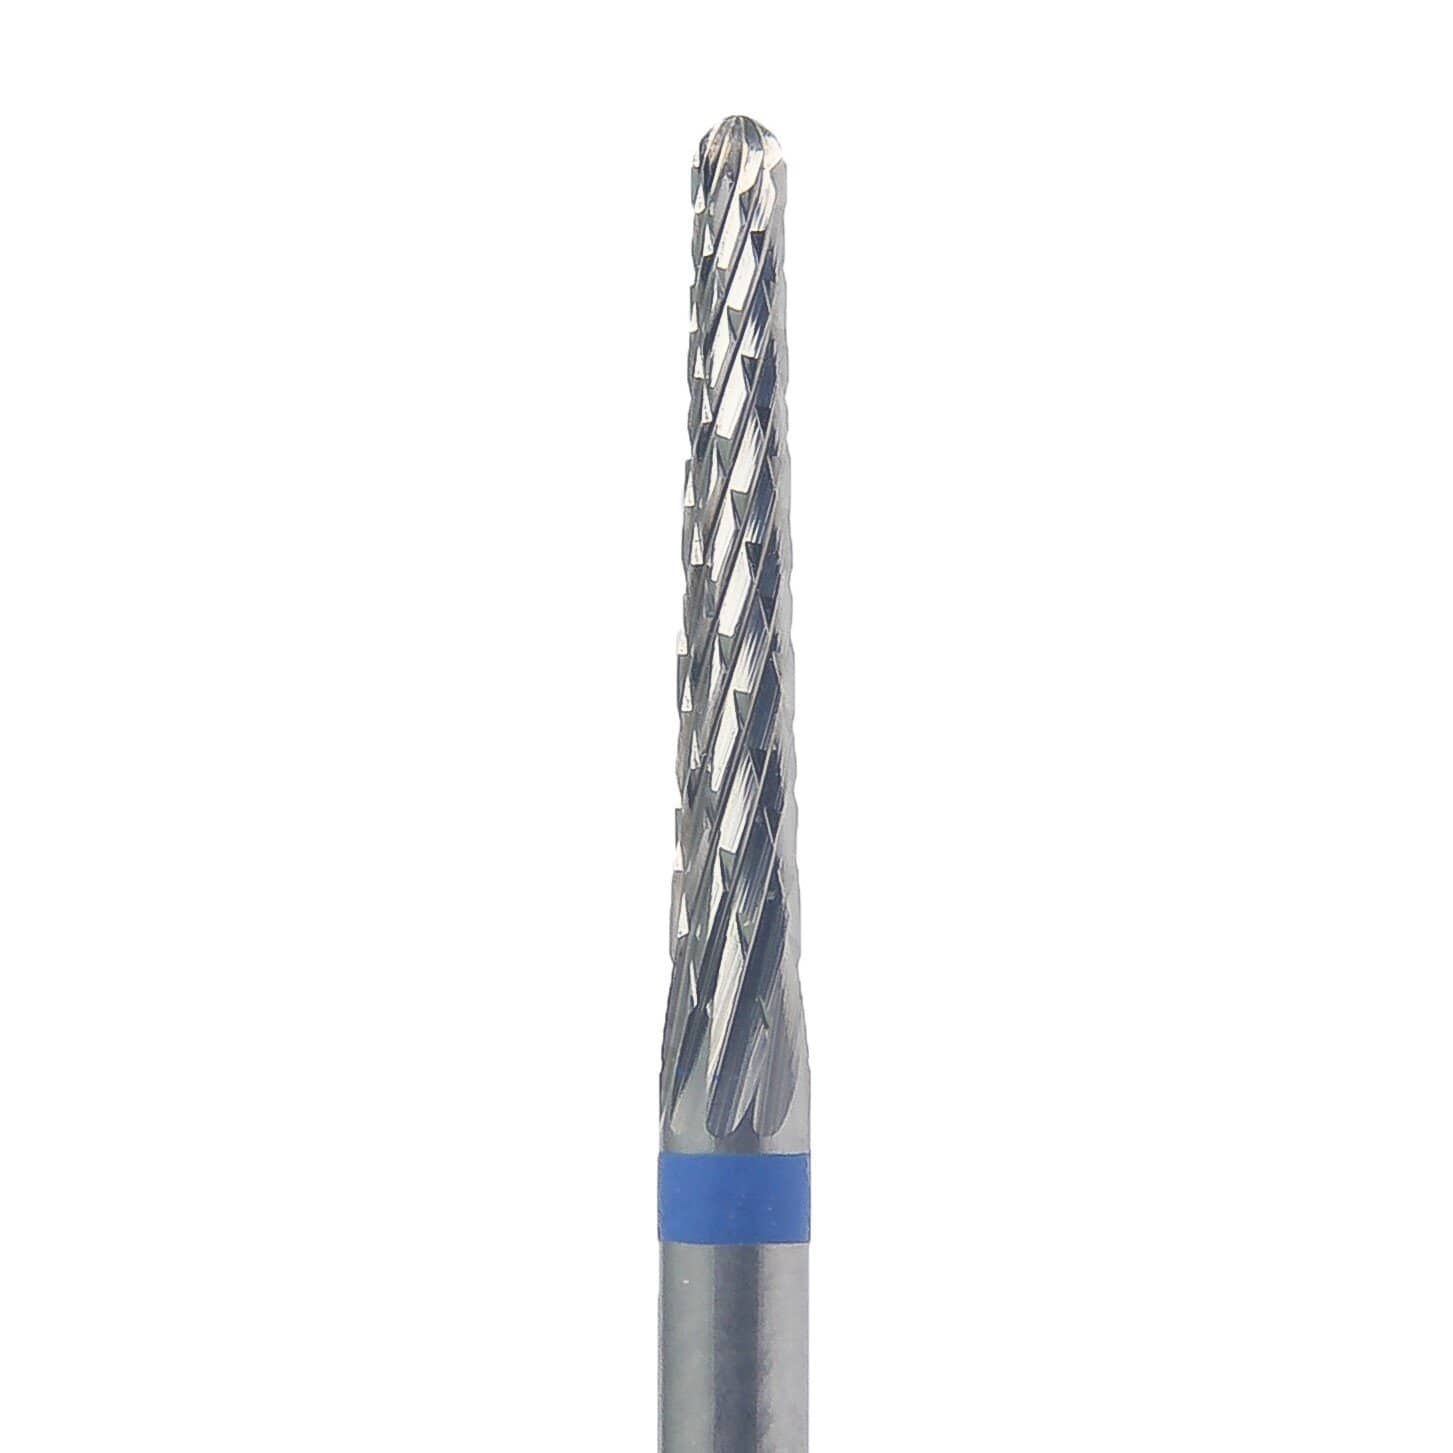 KMIZ Tvrdokovová fréza - kužel - modrá, L-15,0 mm, Ø 2,3 mm